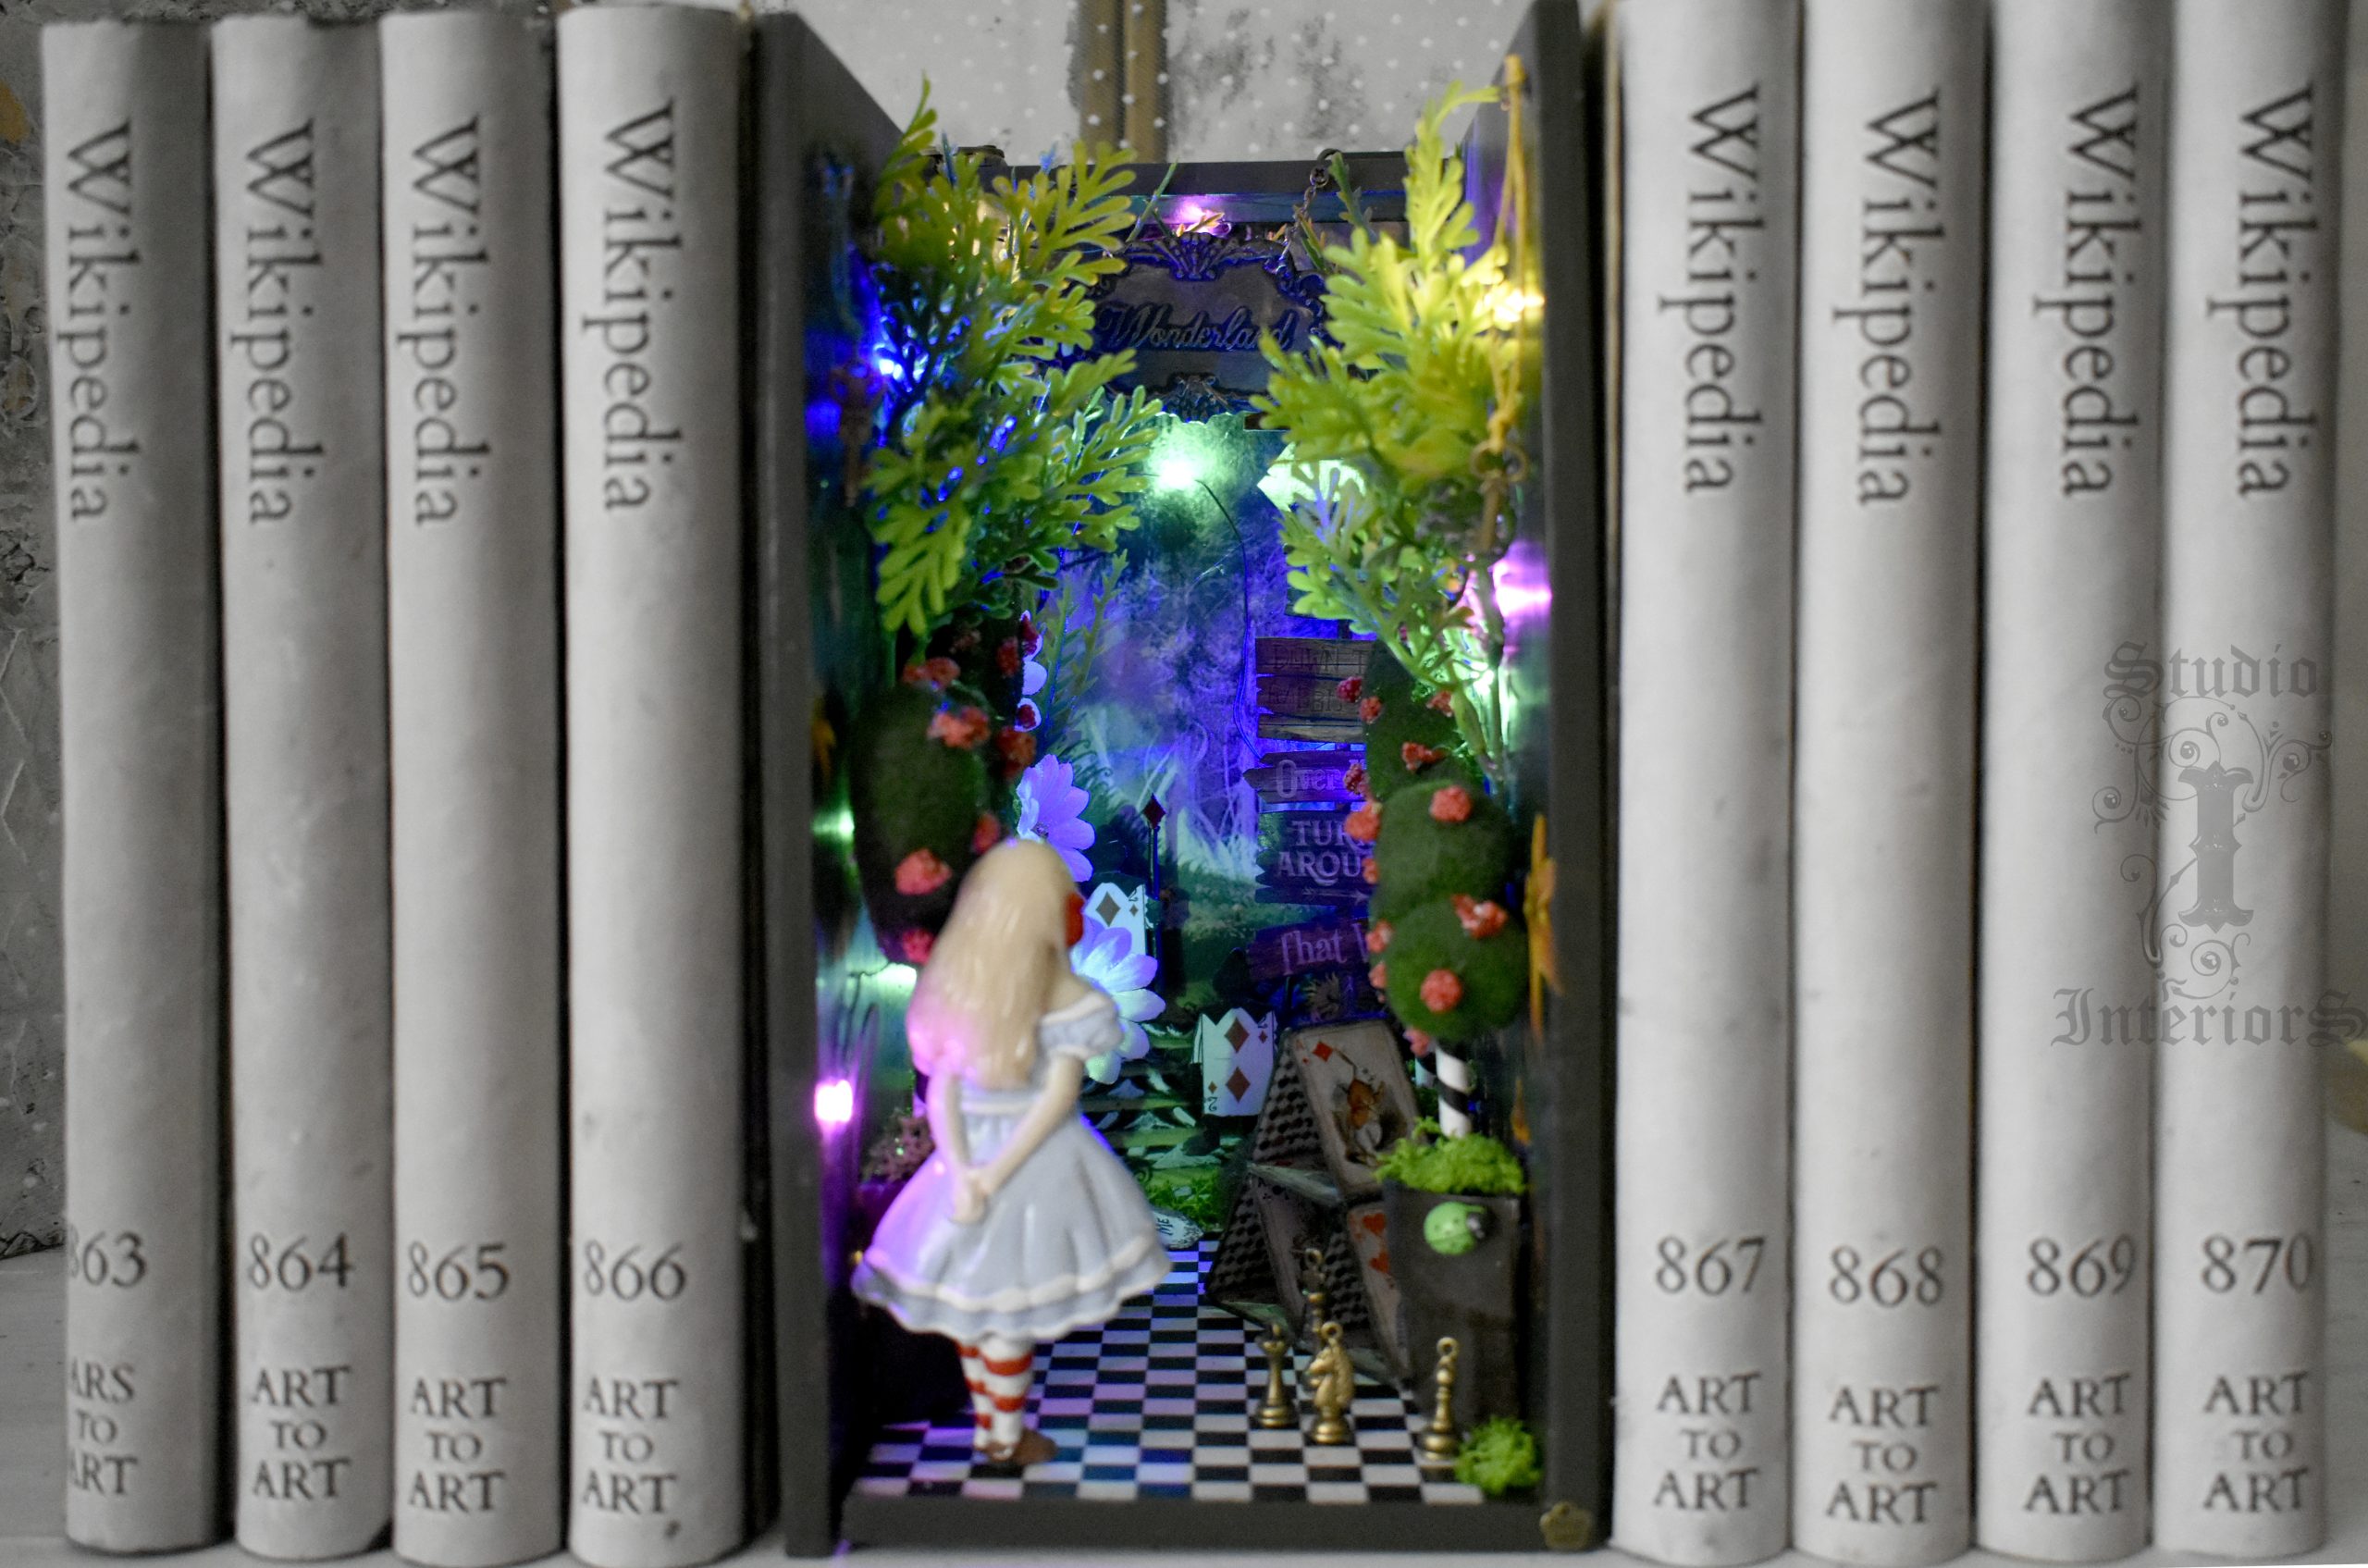 Book nook Alice in Wonderland, book insert Magic Forest